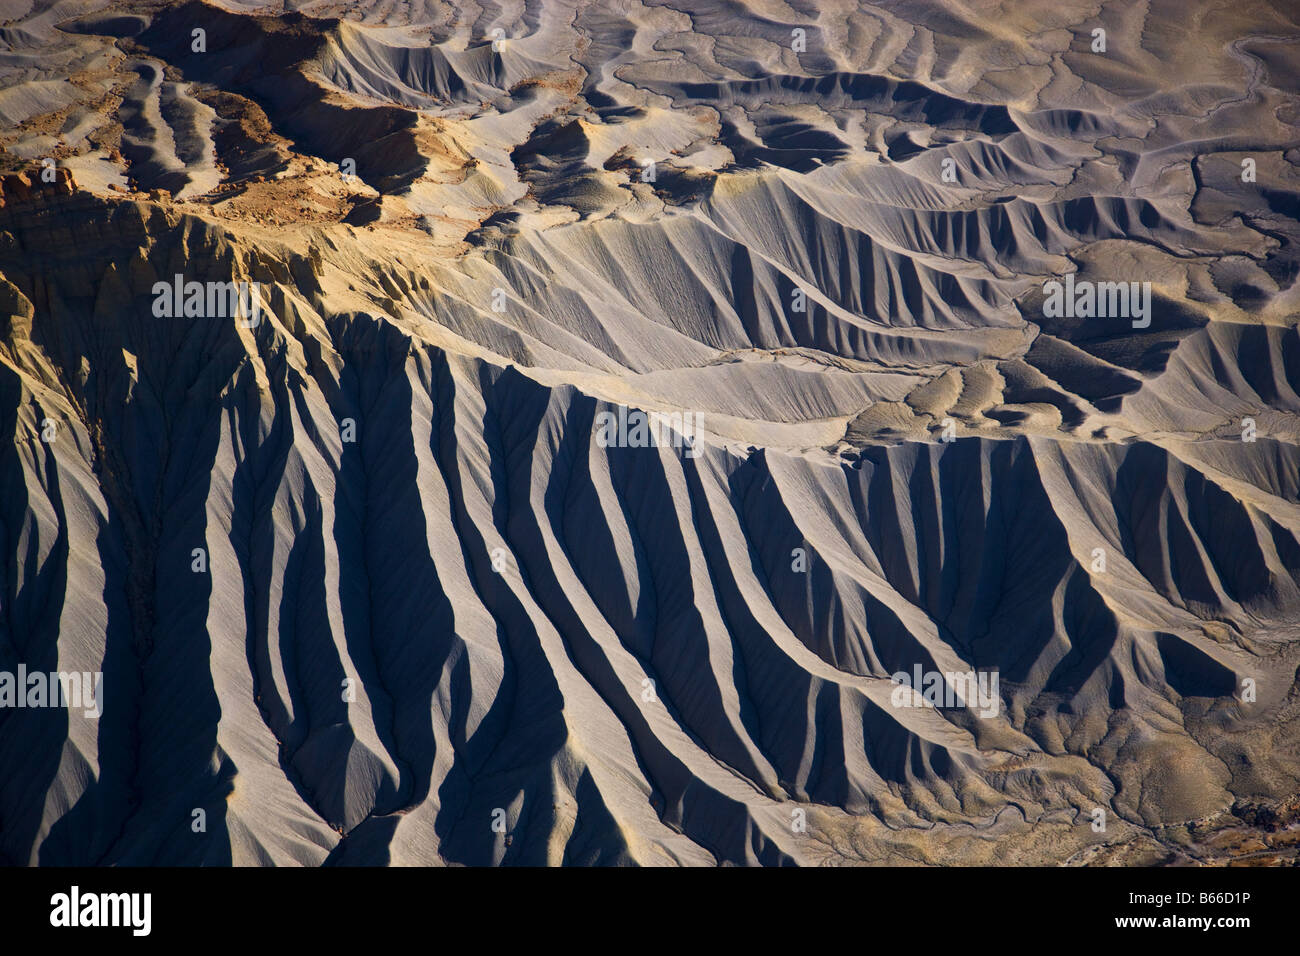 Mit Blick auf die Henry-Berge vom Capitol Reef National Park, Utah Stockfoto